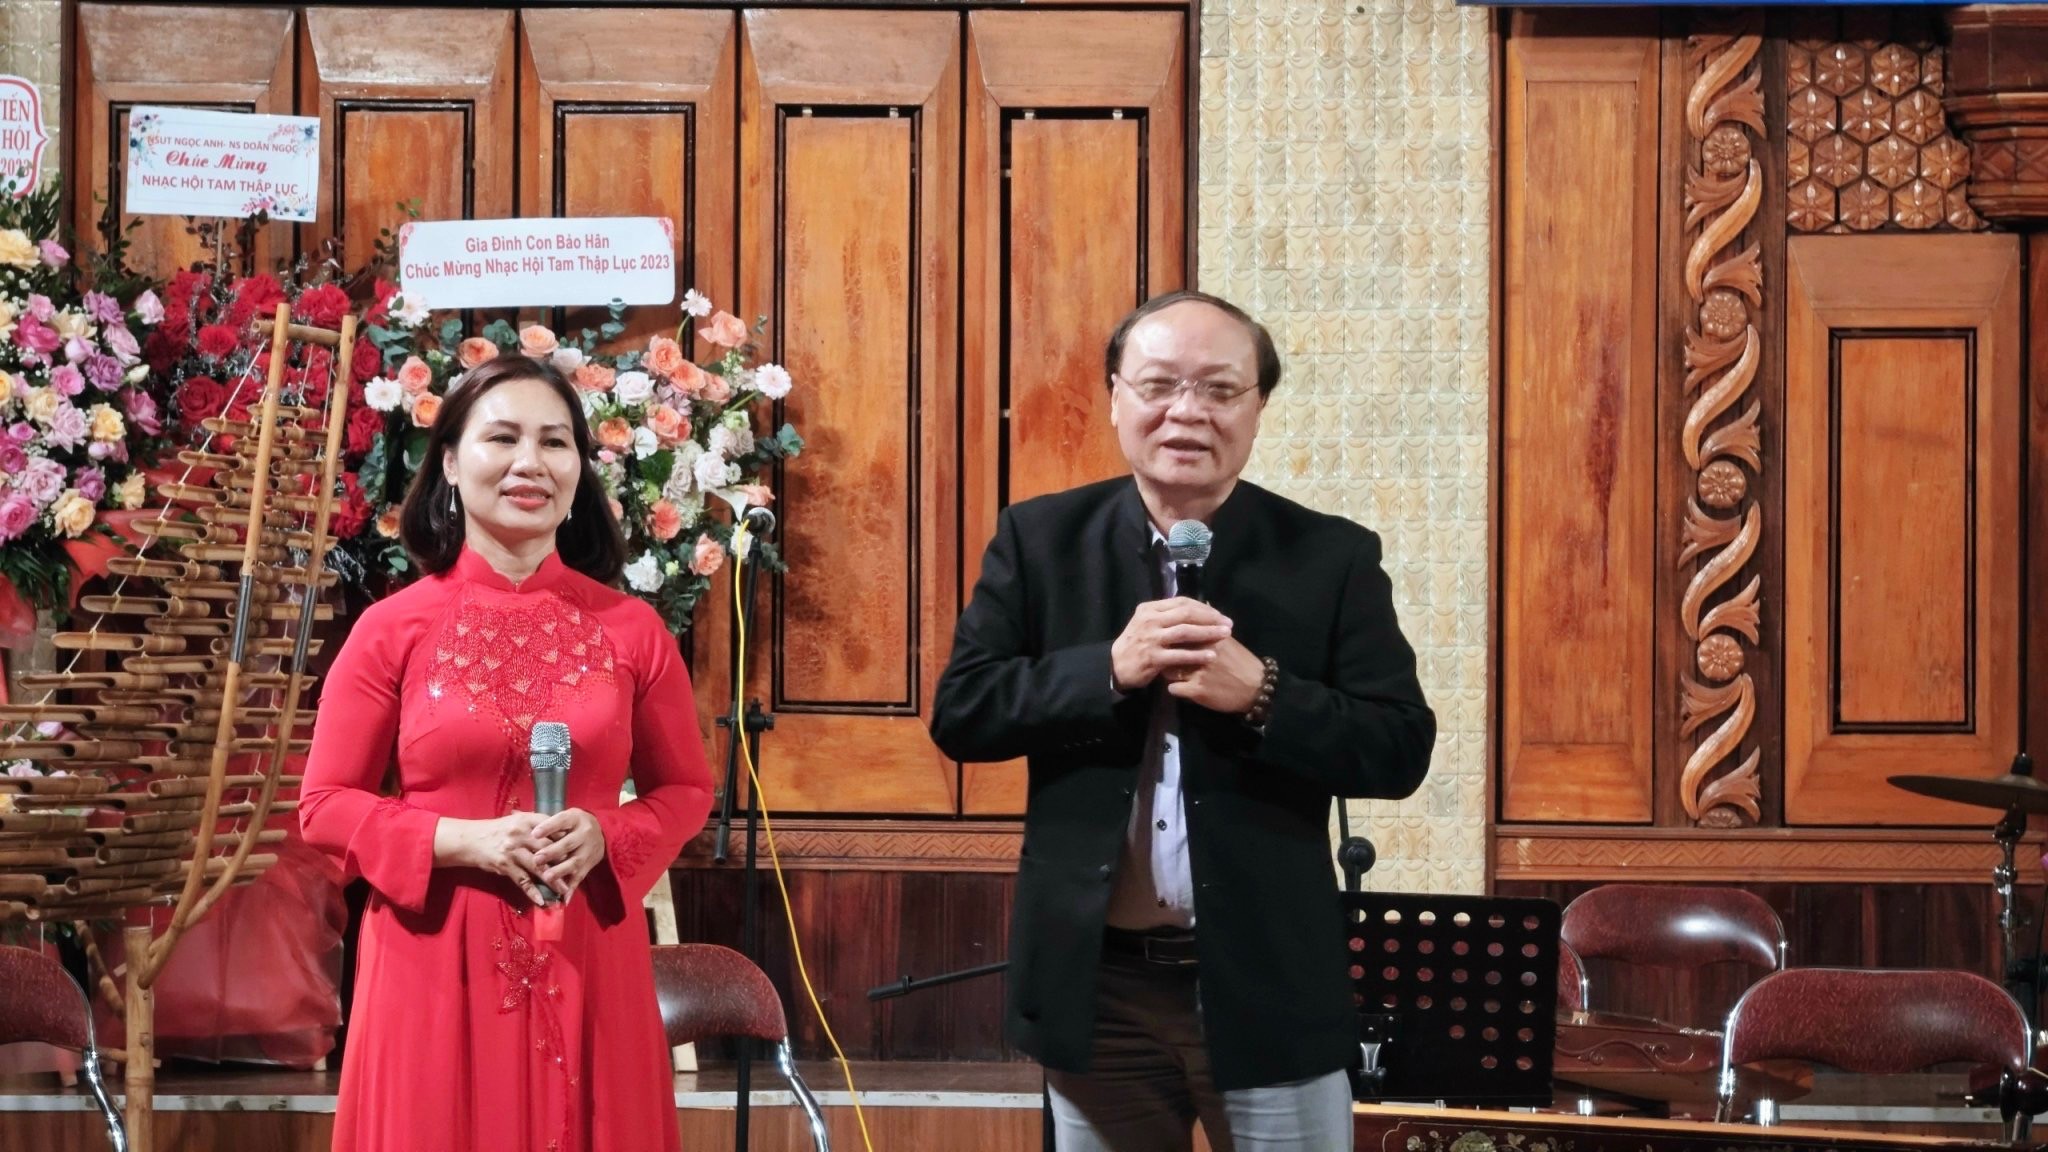 Khẳng định vị trí đàn Tam thập lục trong hệ thống nhạc cụ dân tộc Việt Nam